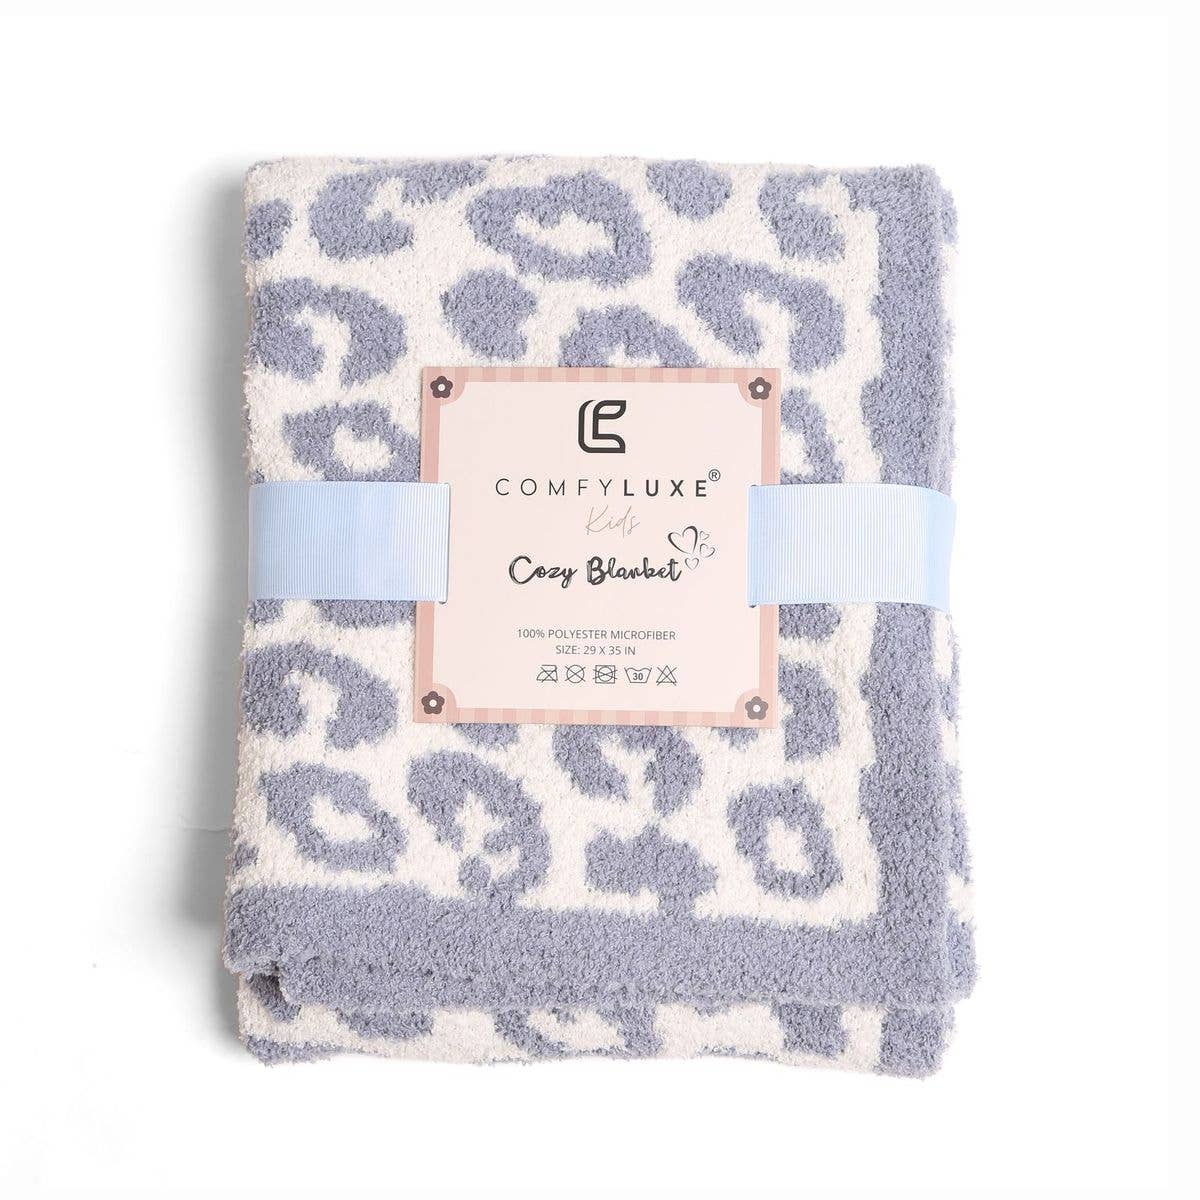 Luxury Cozy Kids Blanket - Blue Leopard